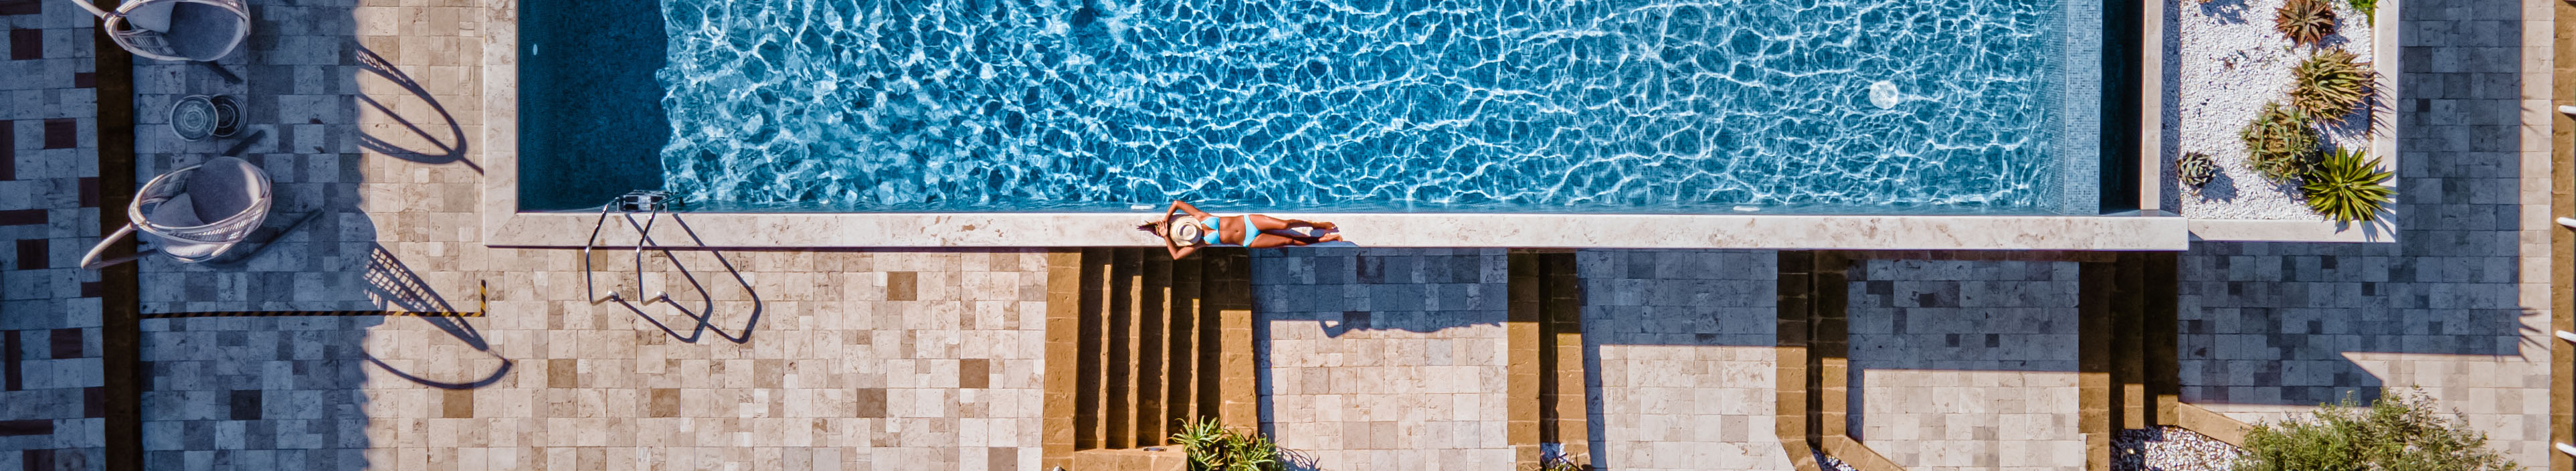 Hotel auf Sizilien, ein Mann schwimmt in einem Pool. Eine Frau liegt am Beckenrand.